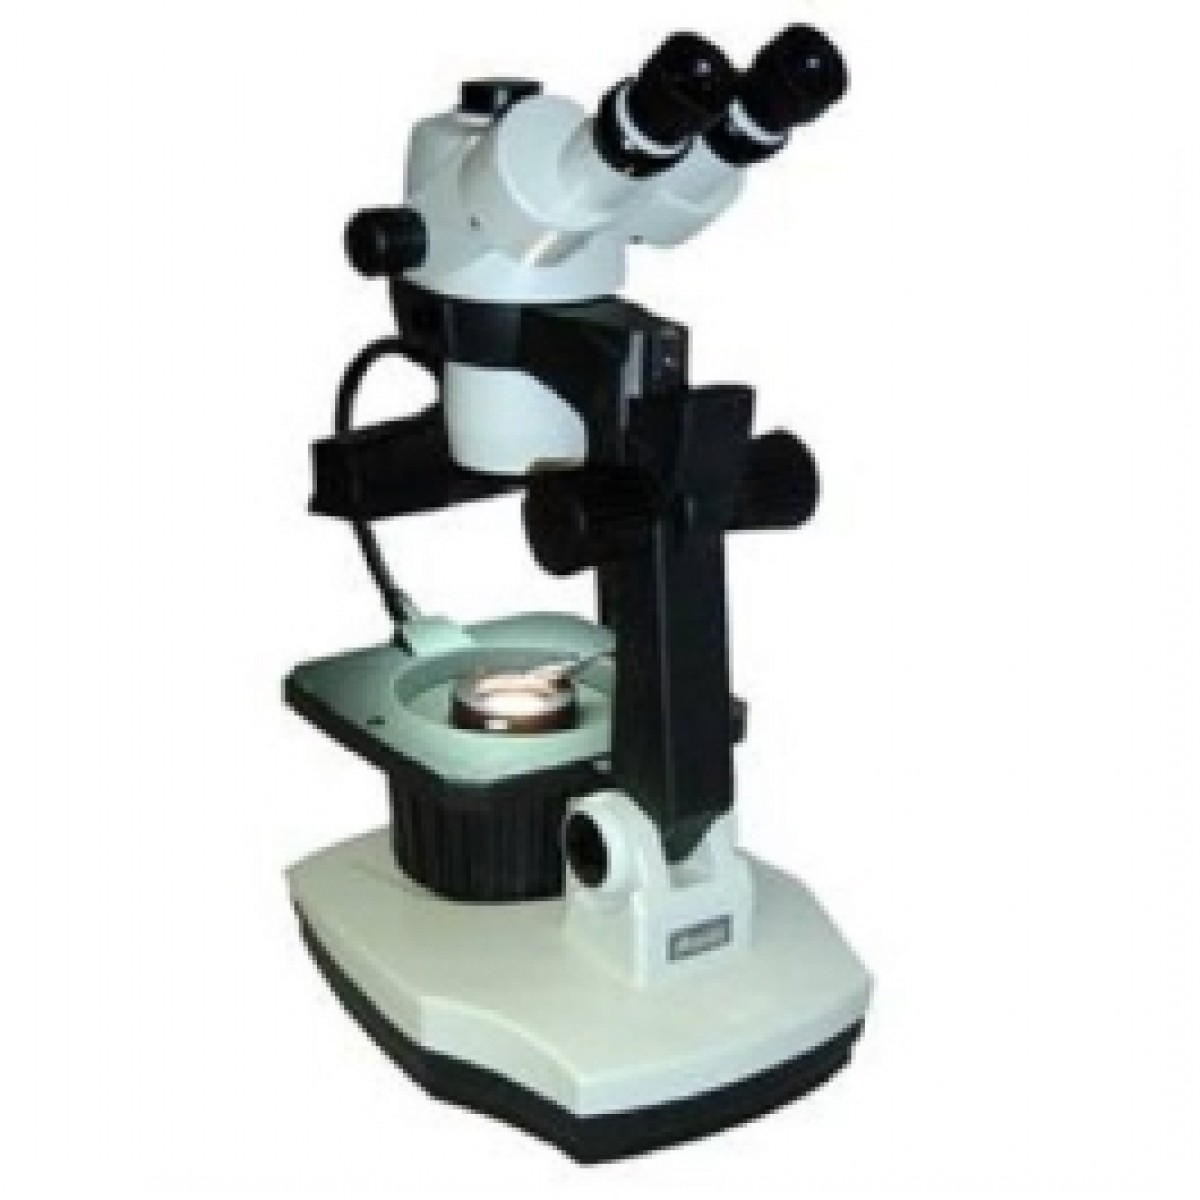 Realtime Microscopio professionale a campo scuro modello MOTIC Ricambi  orologi milano